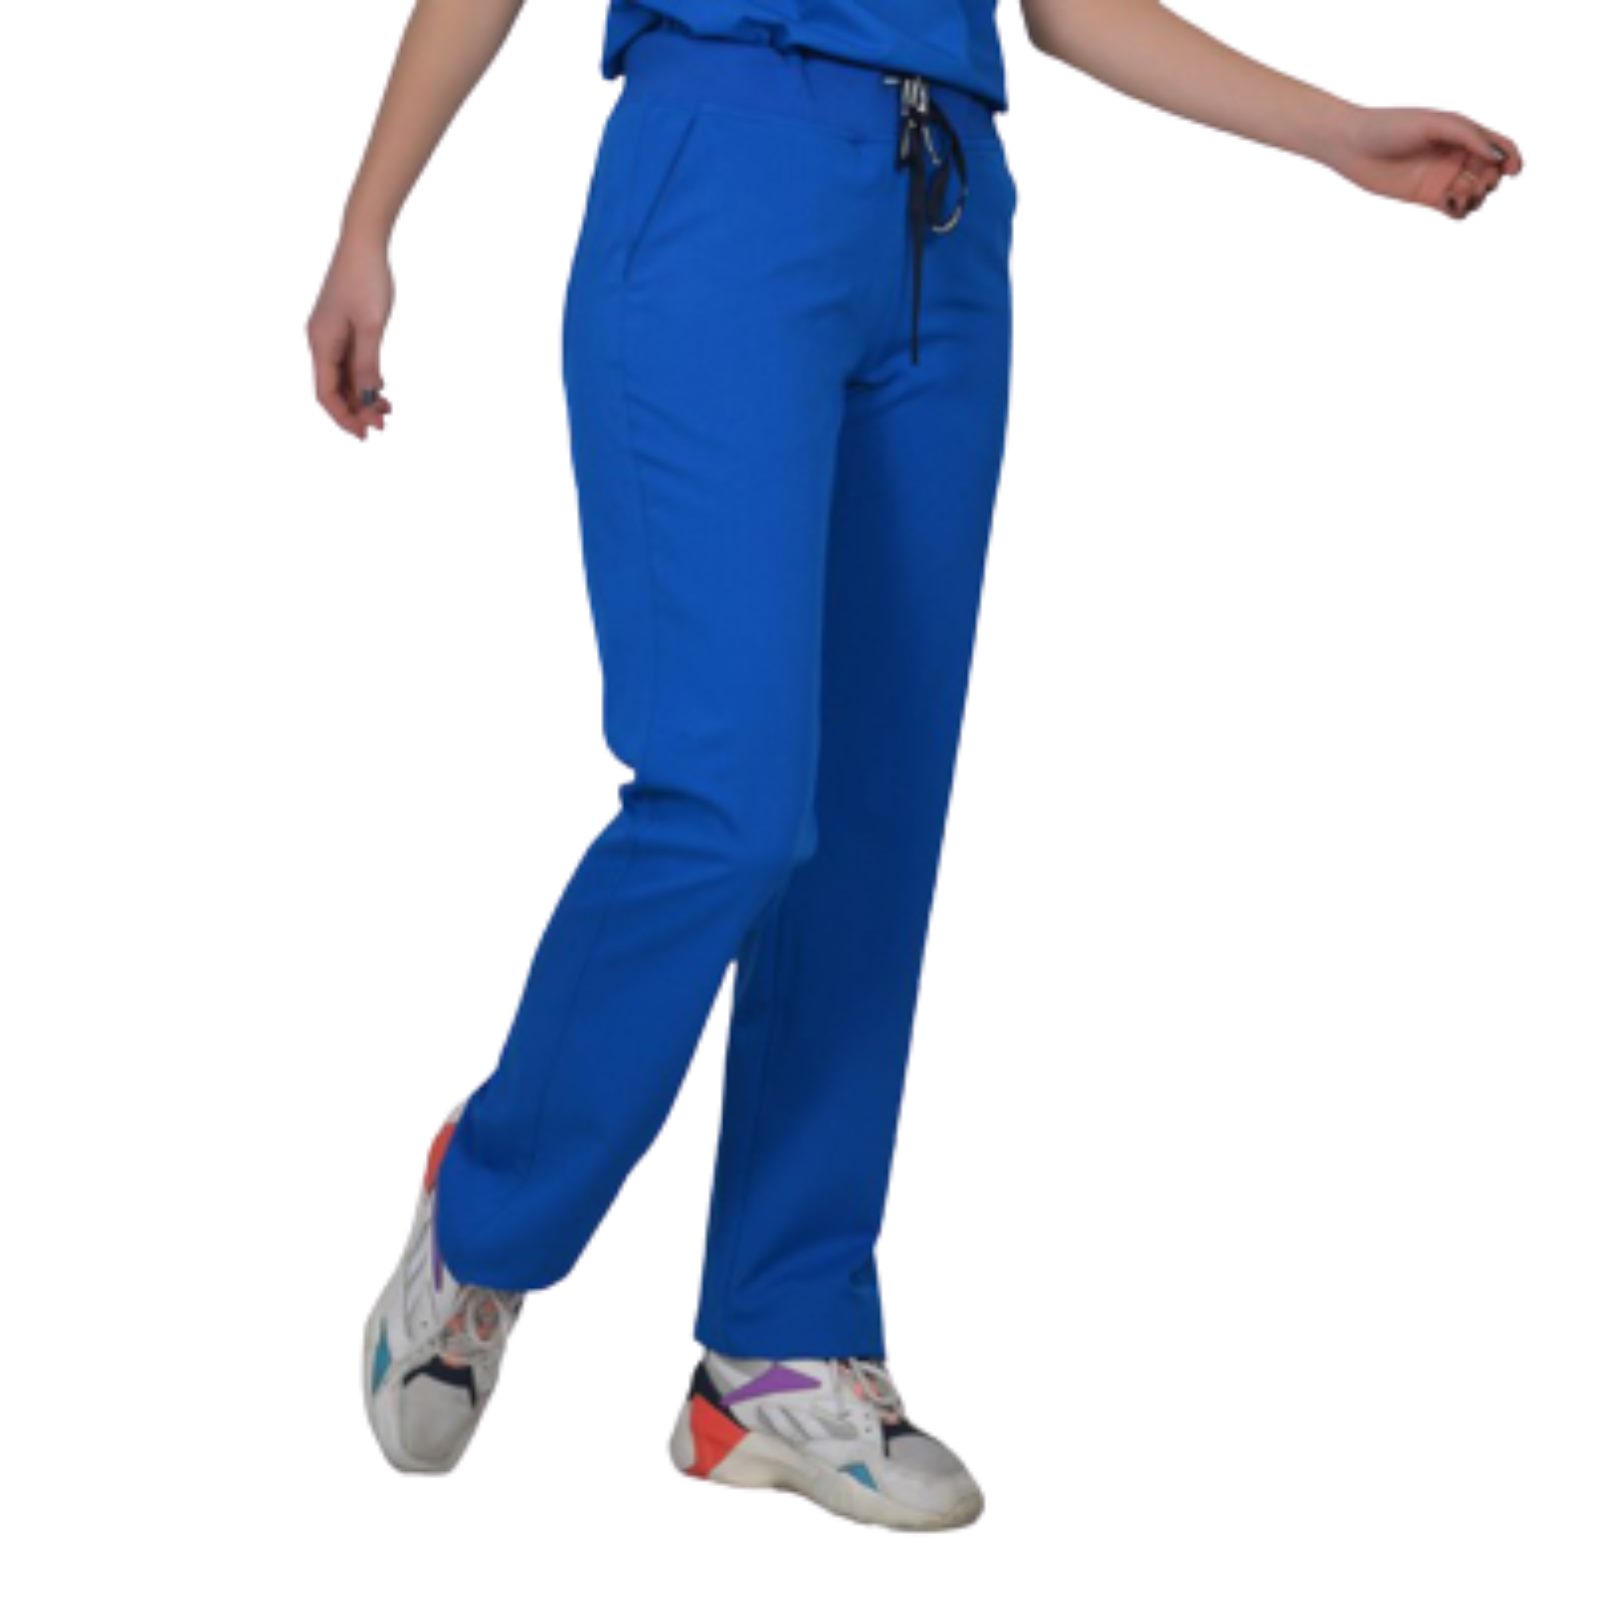 Women's Scrub Pants 401 Fw Royal Blue